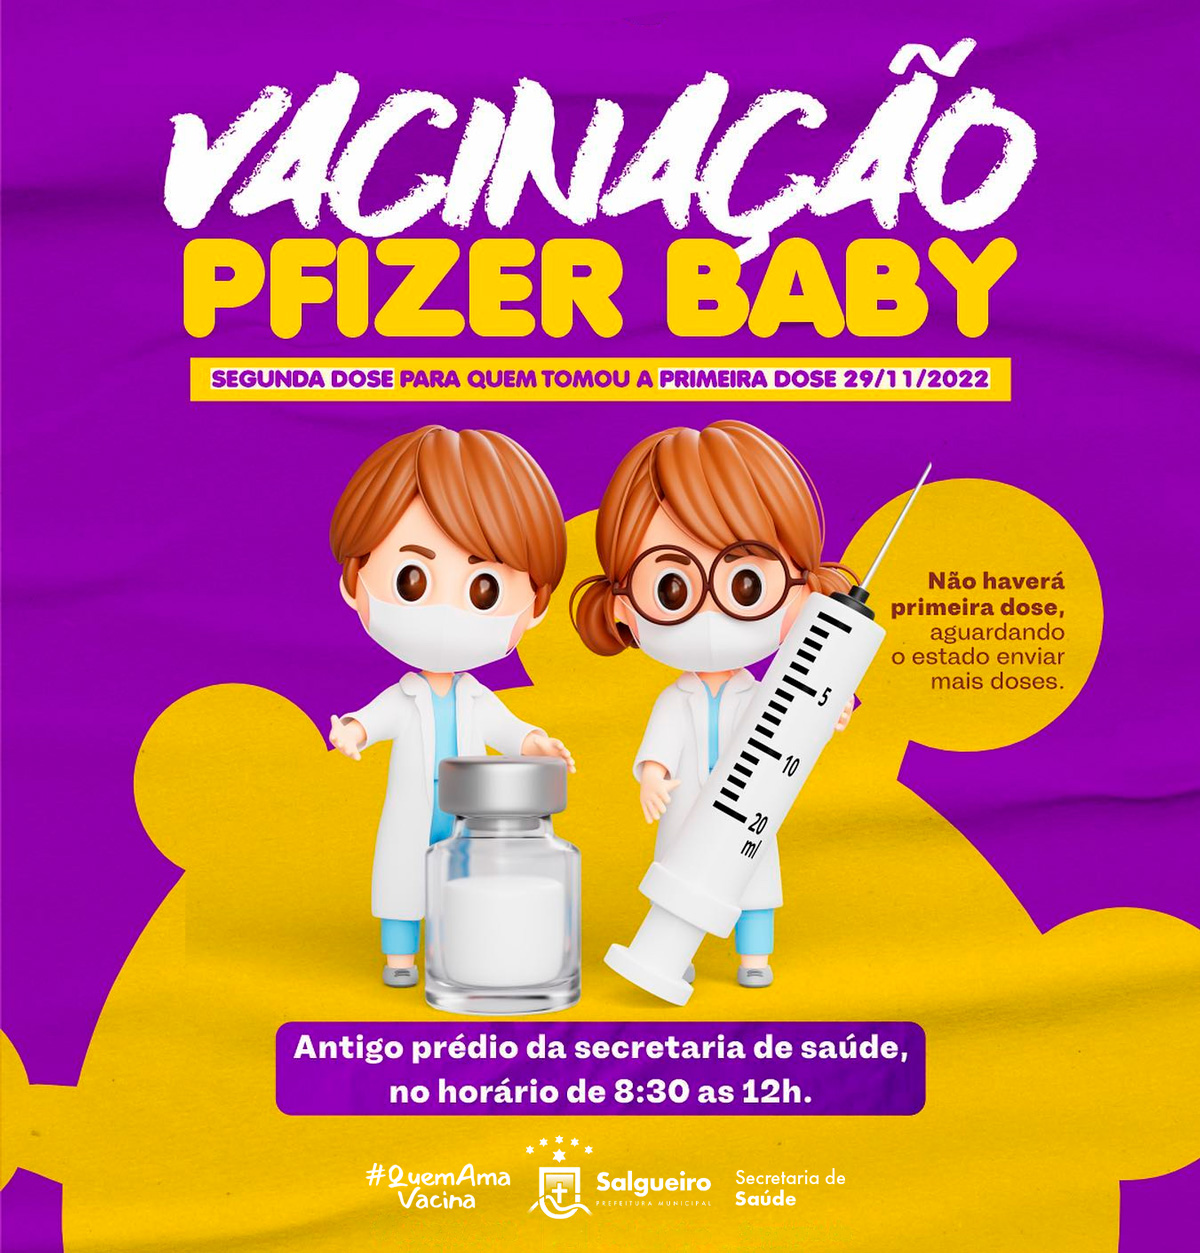 Vacinação Pfizer baby